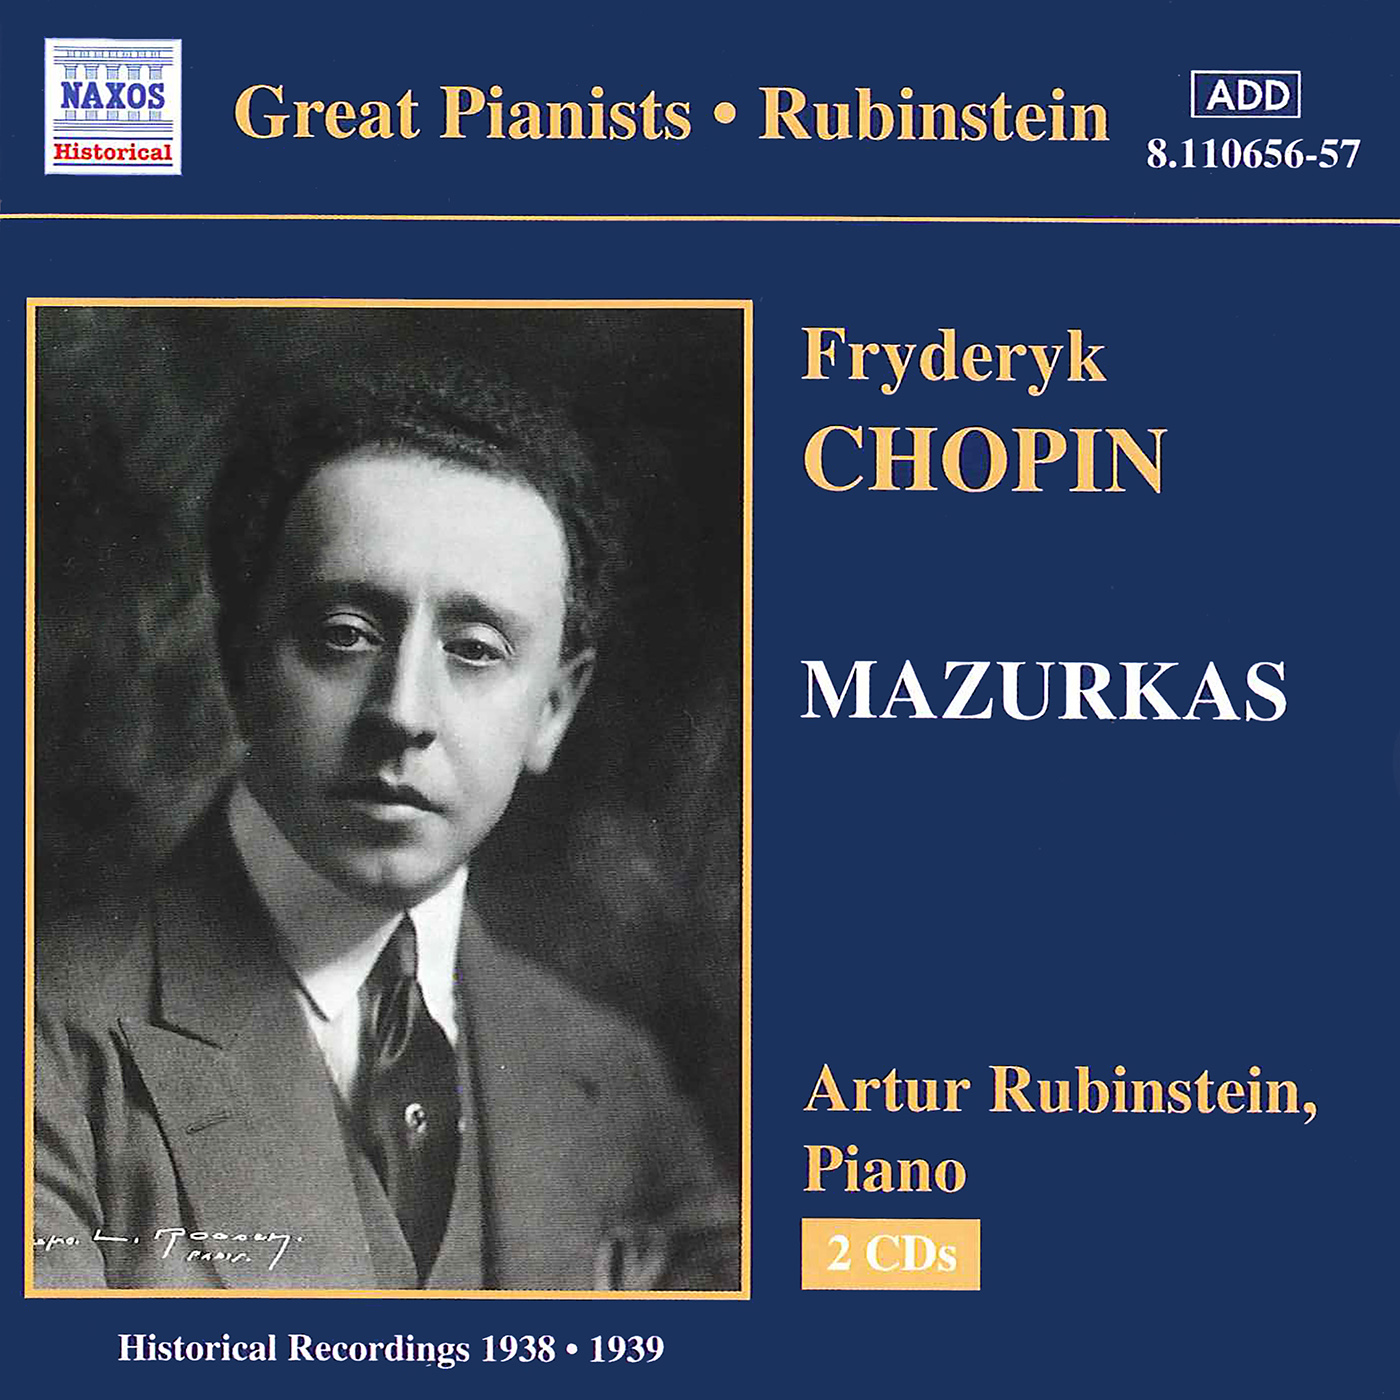 Mazurka No. 42 in G Major, Op. 67, No. 1